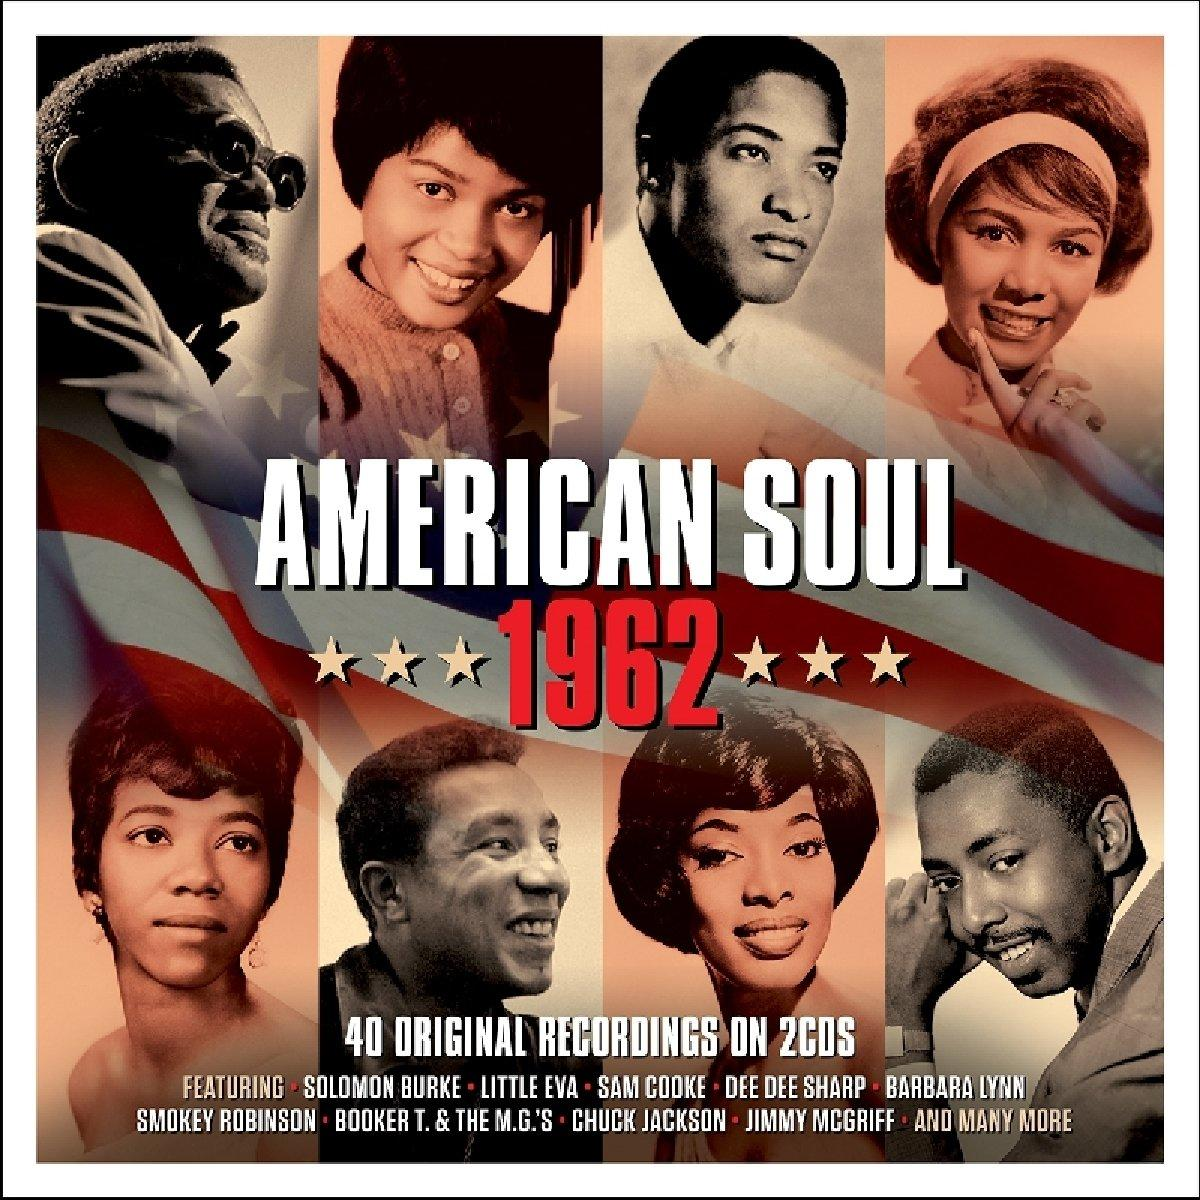 American - (CD) Soul VARIOUS 1962 -